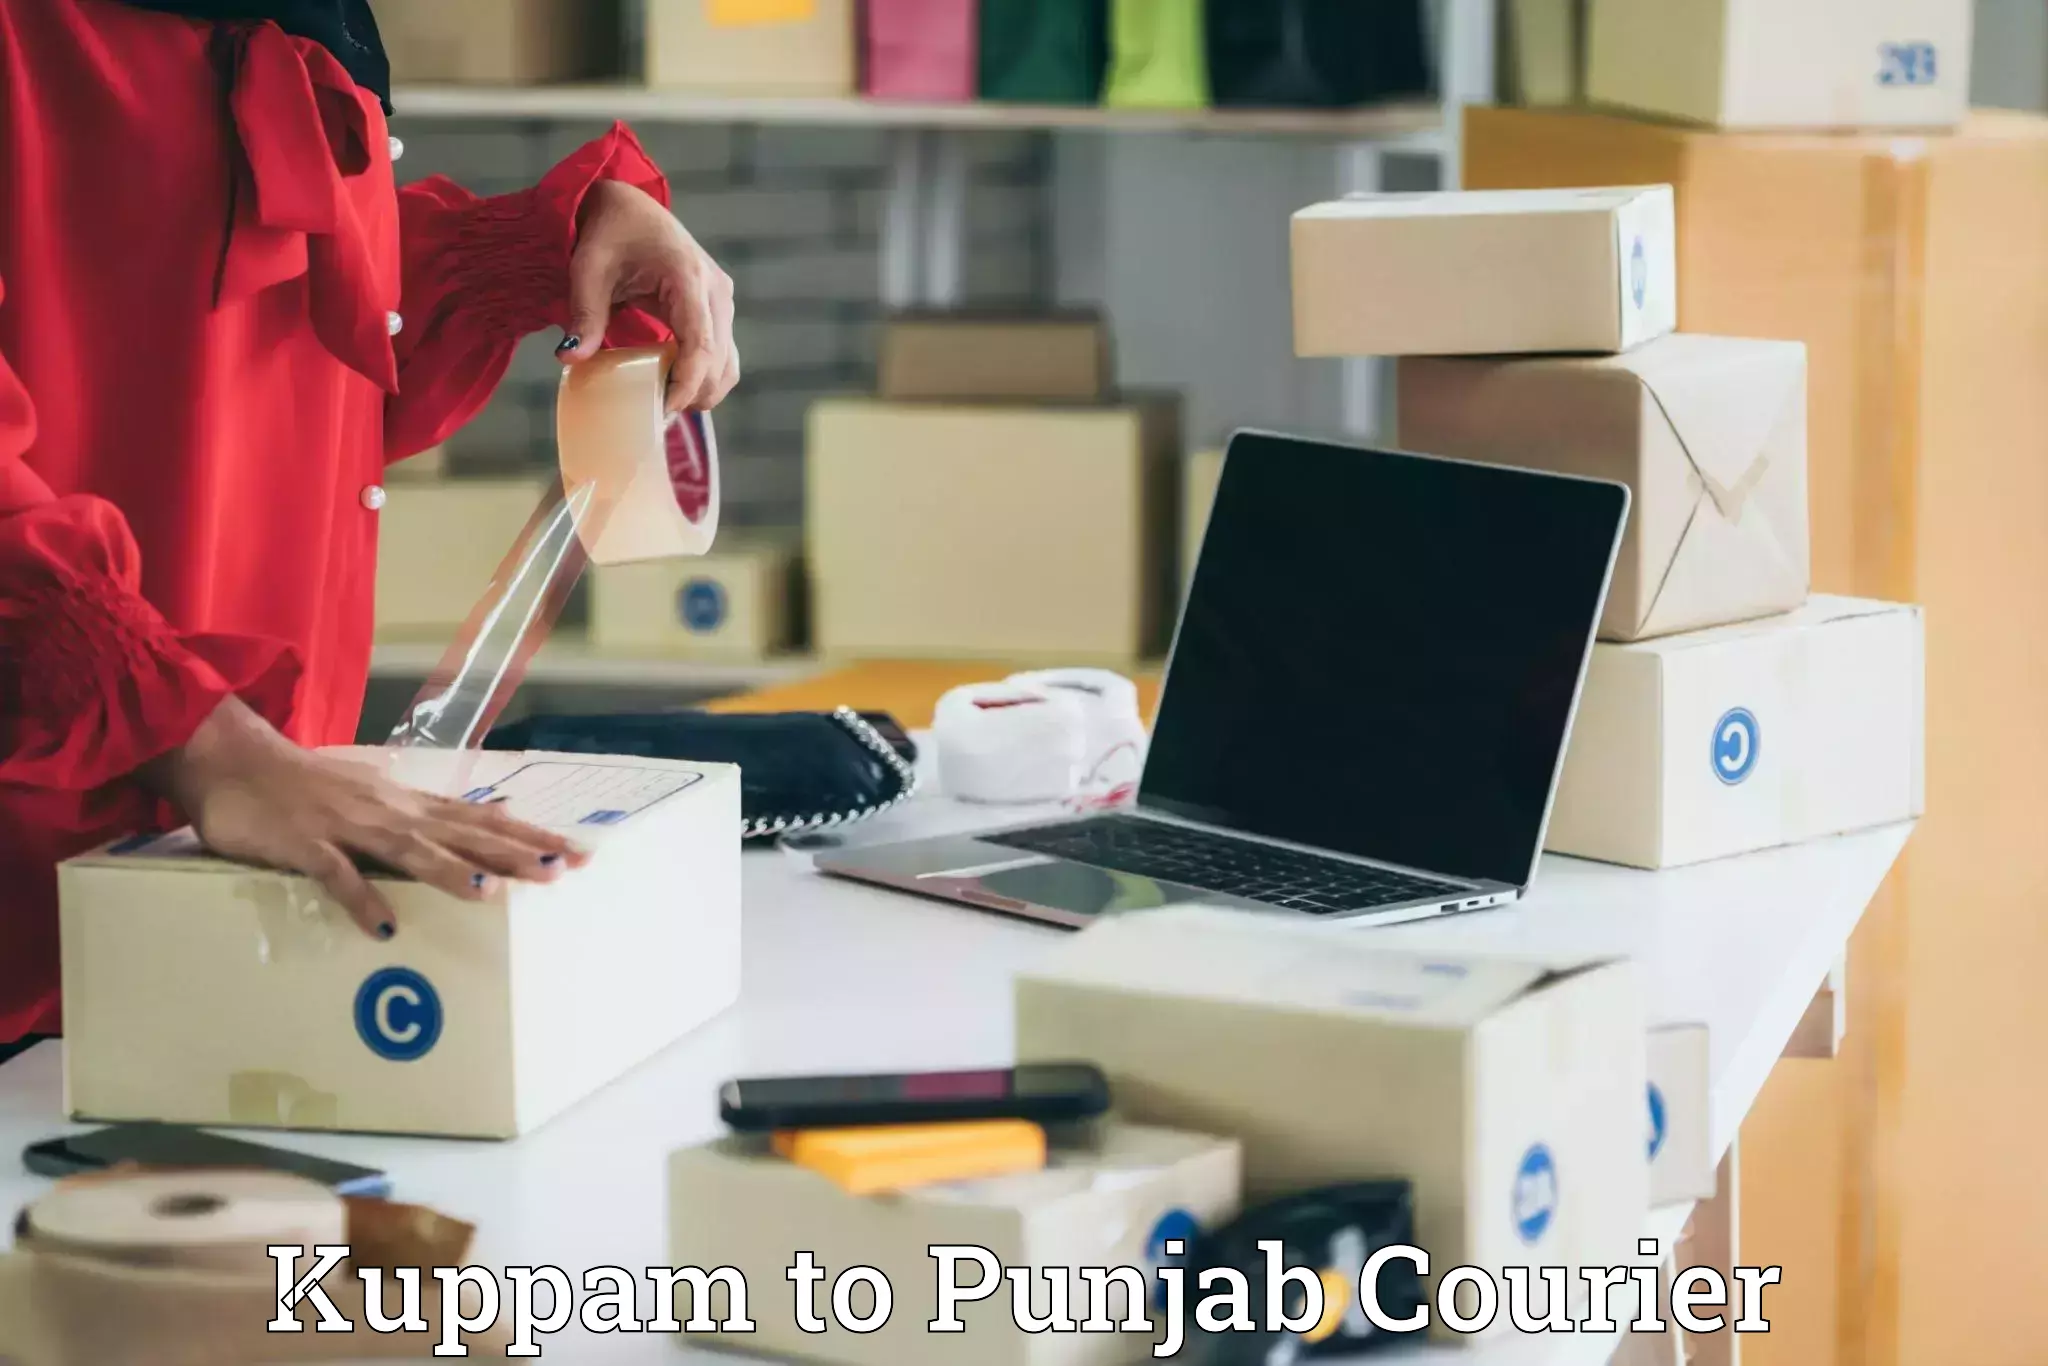 Efficient parcel transport Kuppam to Punjab